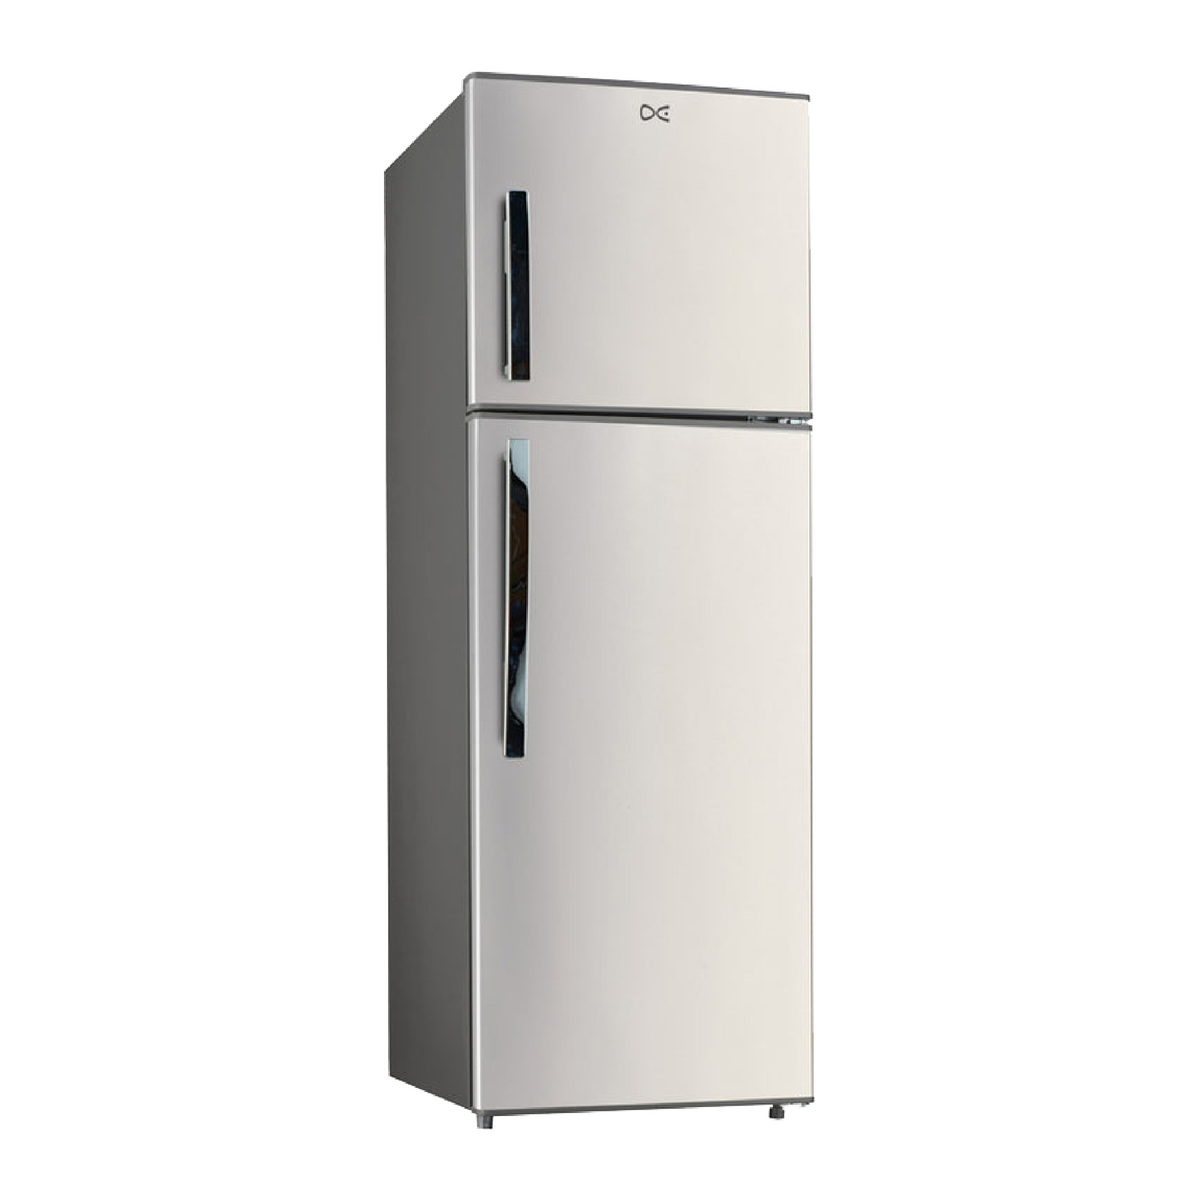 Daewoo Double Door Refrigerator WRTT4600S 460Ltr